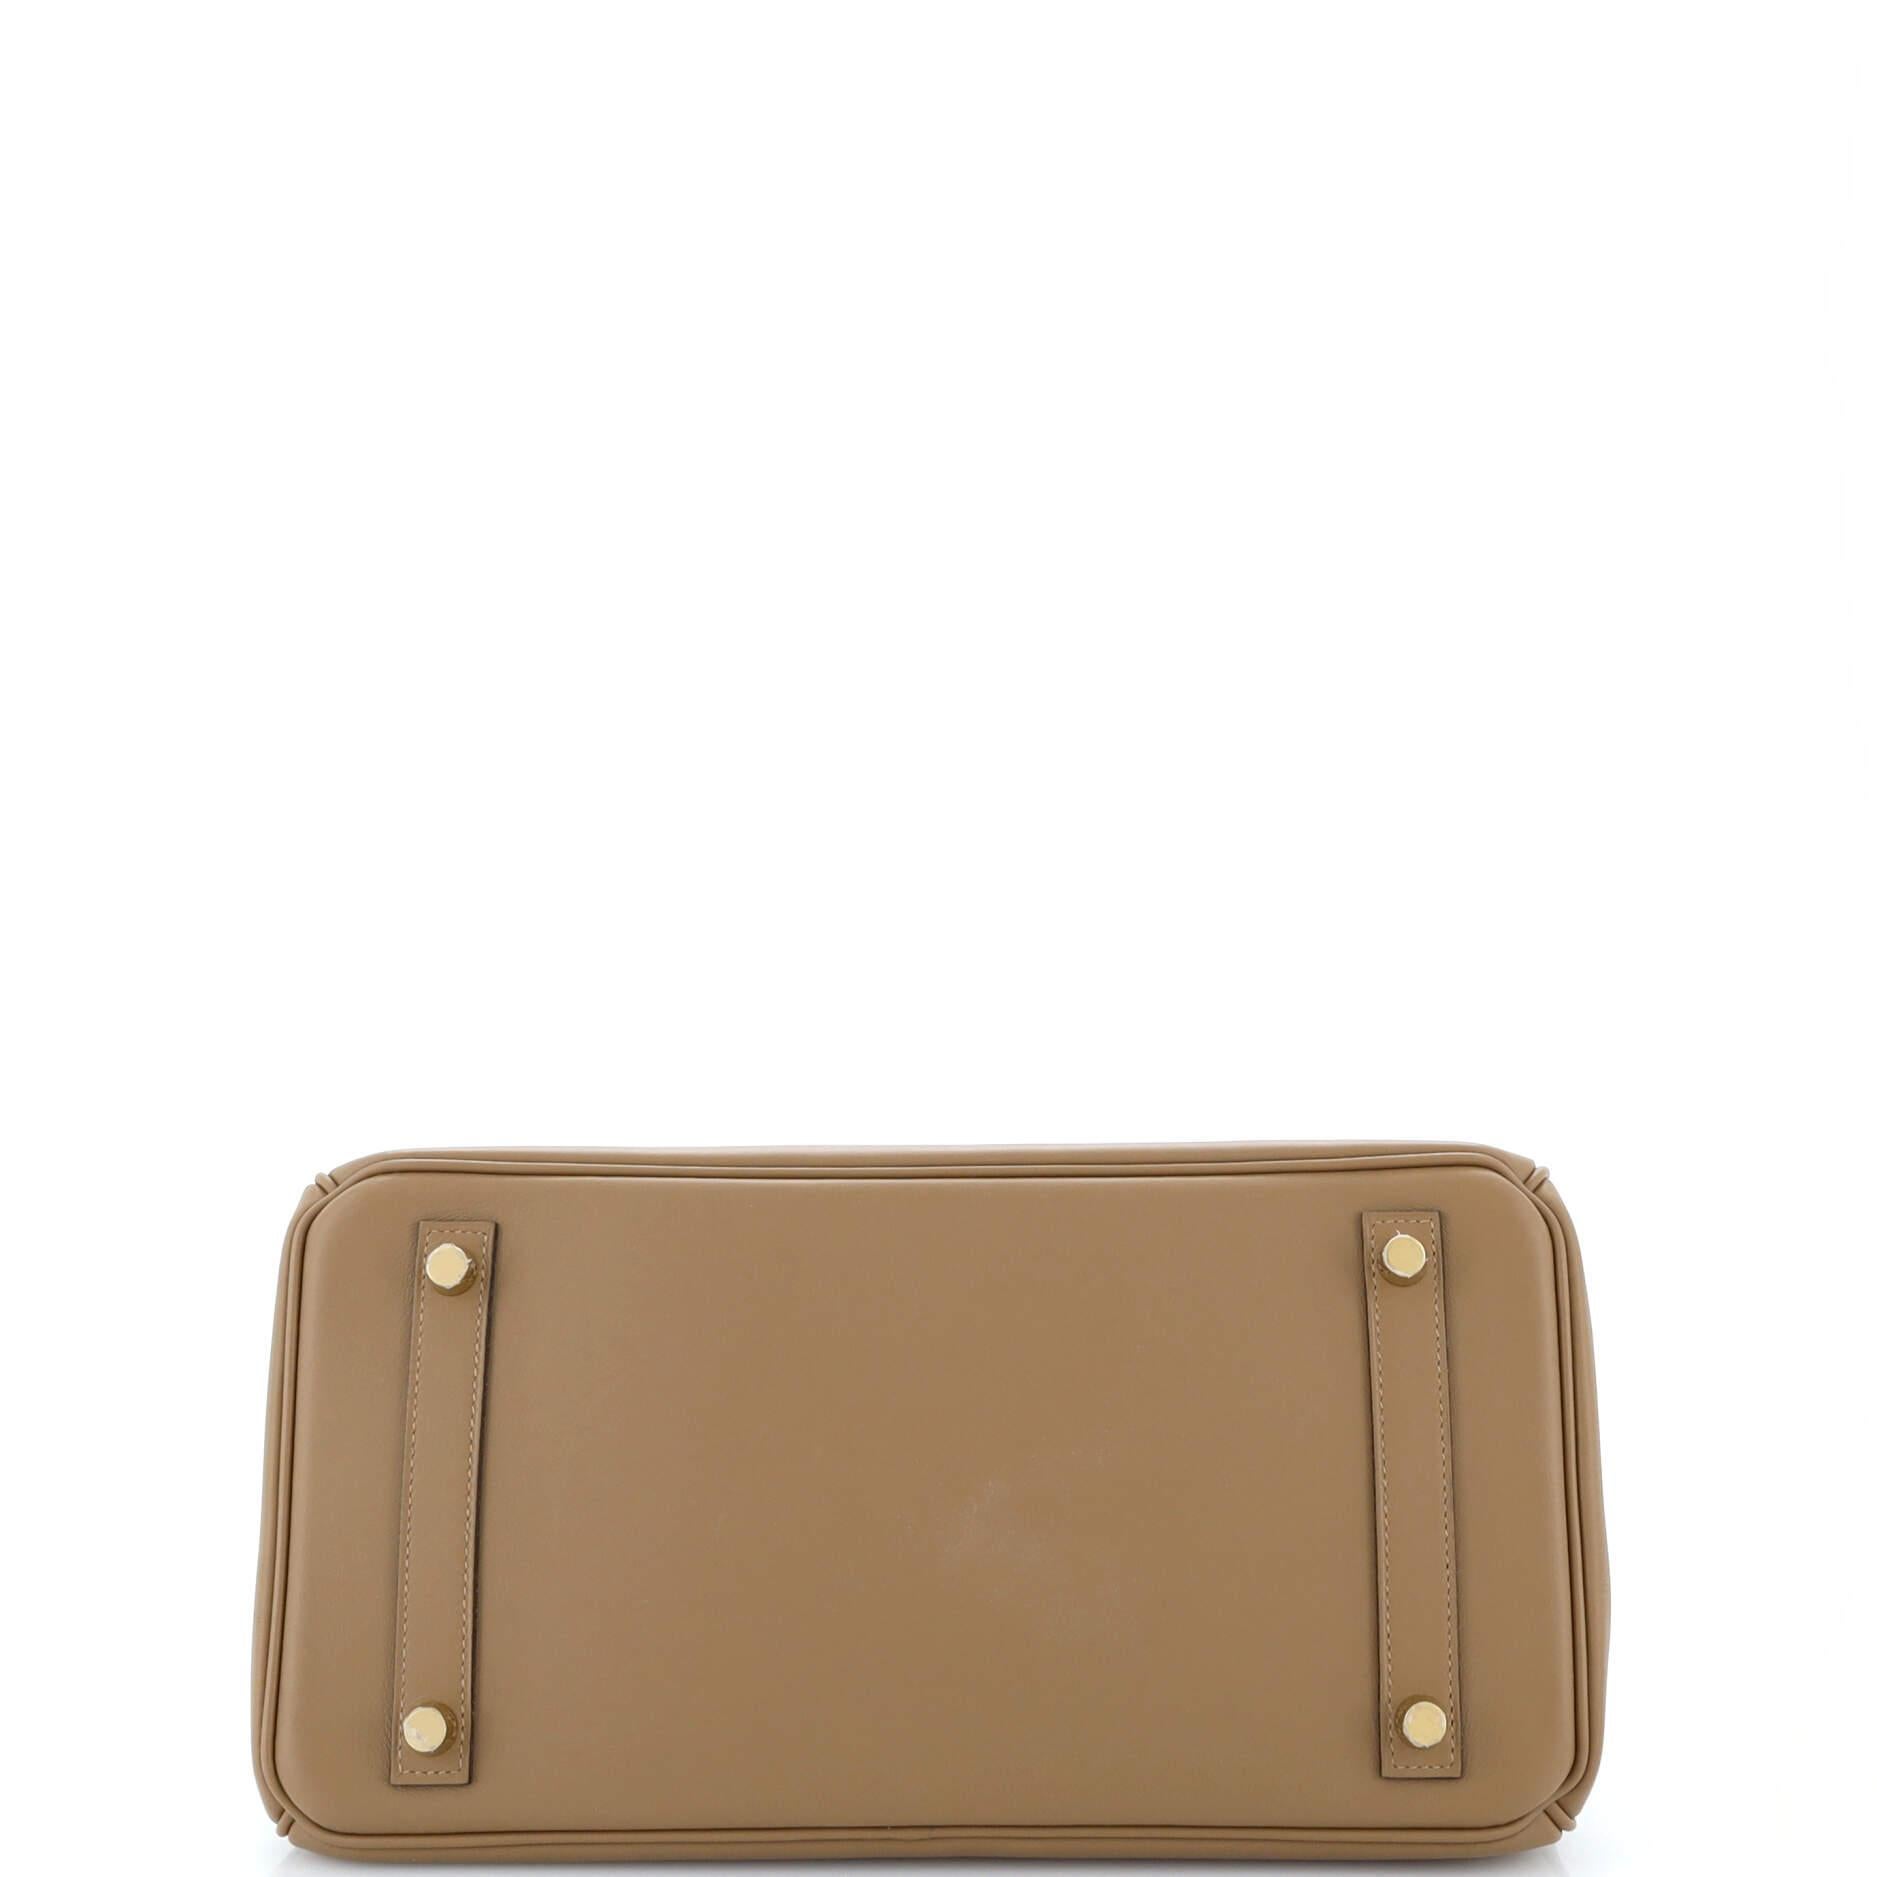 Hermes Birkin Handbag Beige De Weimar Jonathan with Gold Hardware 30 For Sale 1